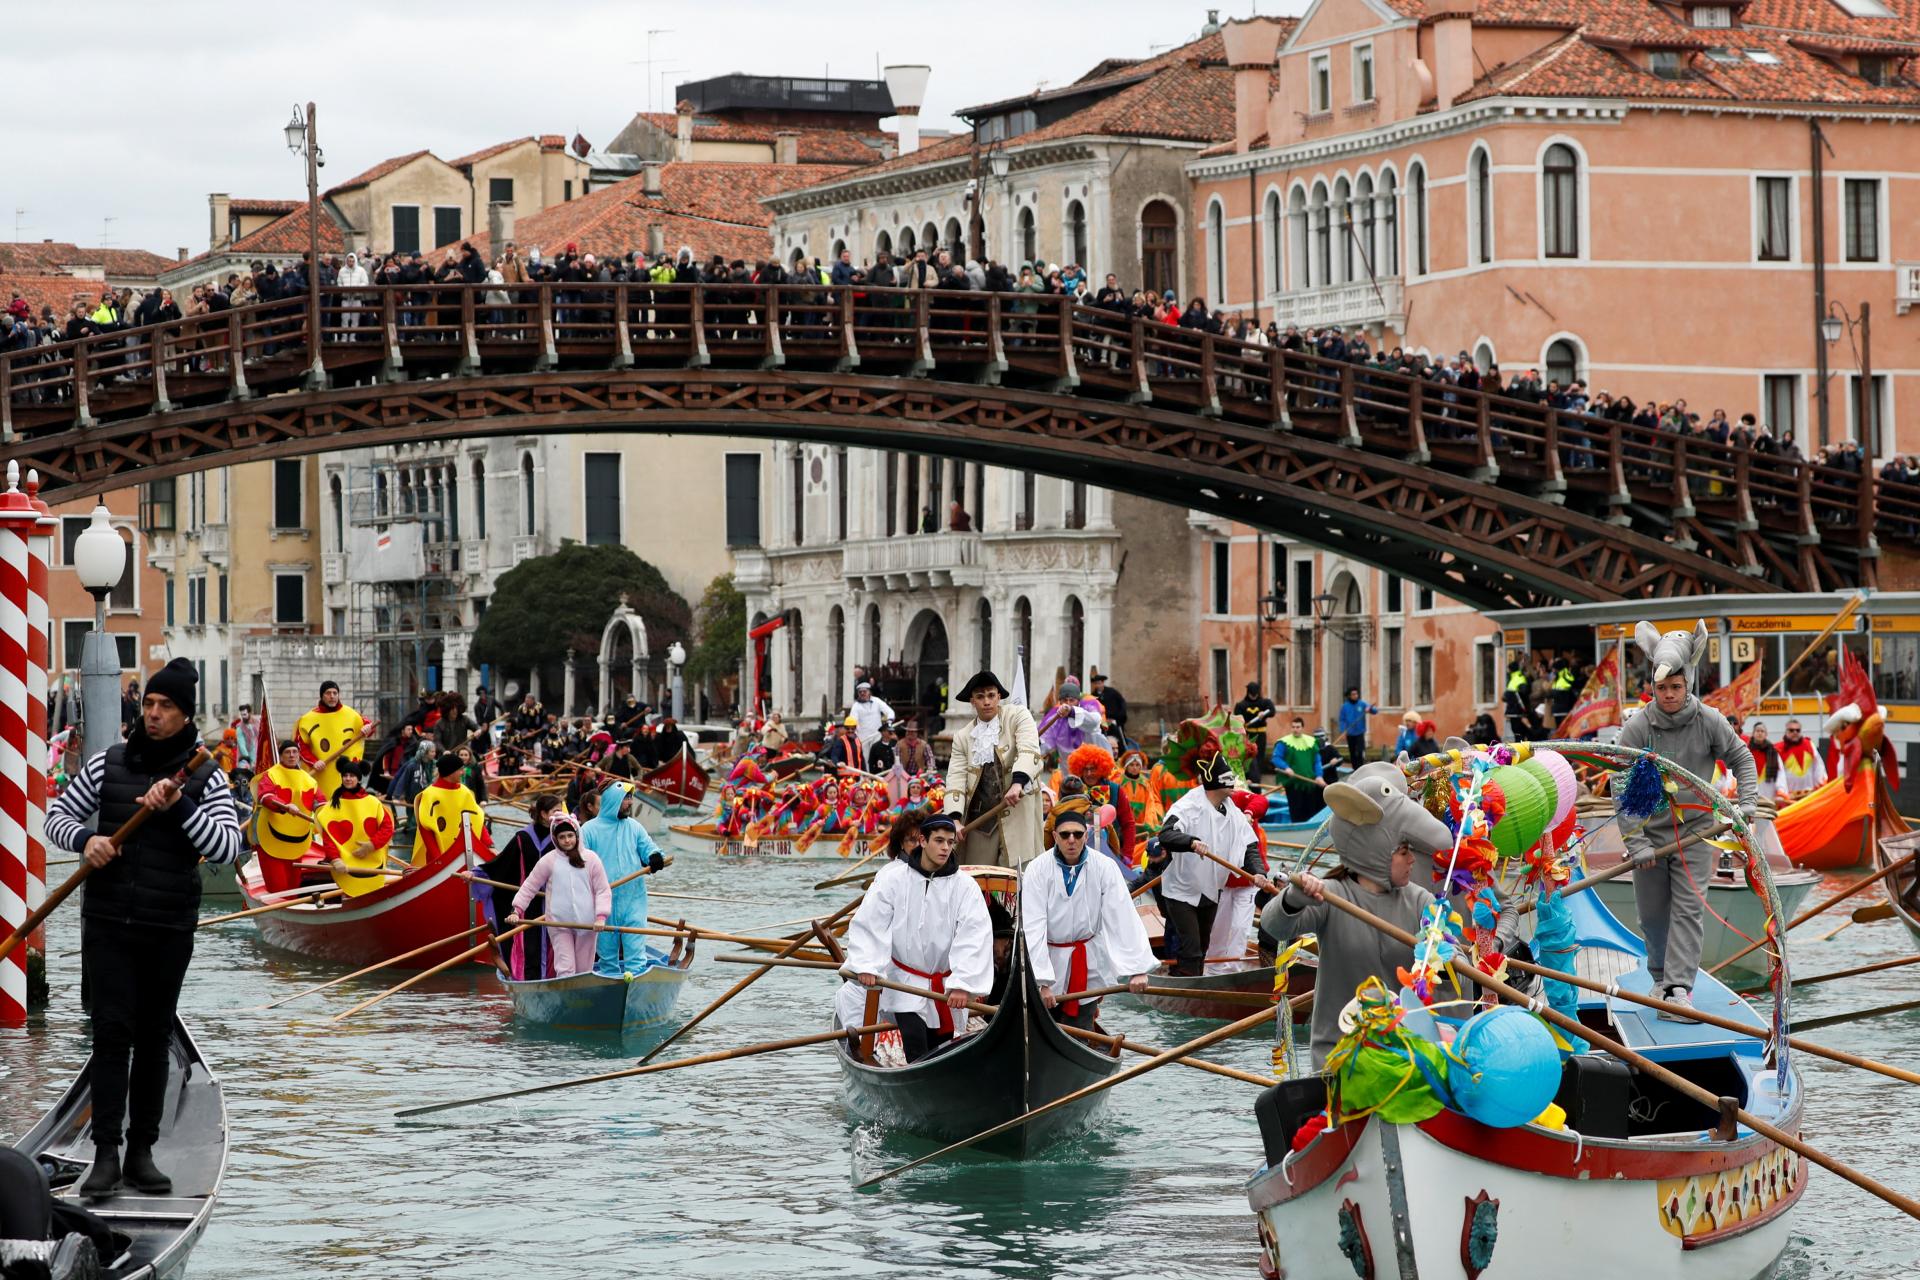 V Benátkach zápolia kvôli vstupnému. Davy nepreriedli a radnica chce, aby turisti platili dvojnásobok